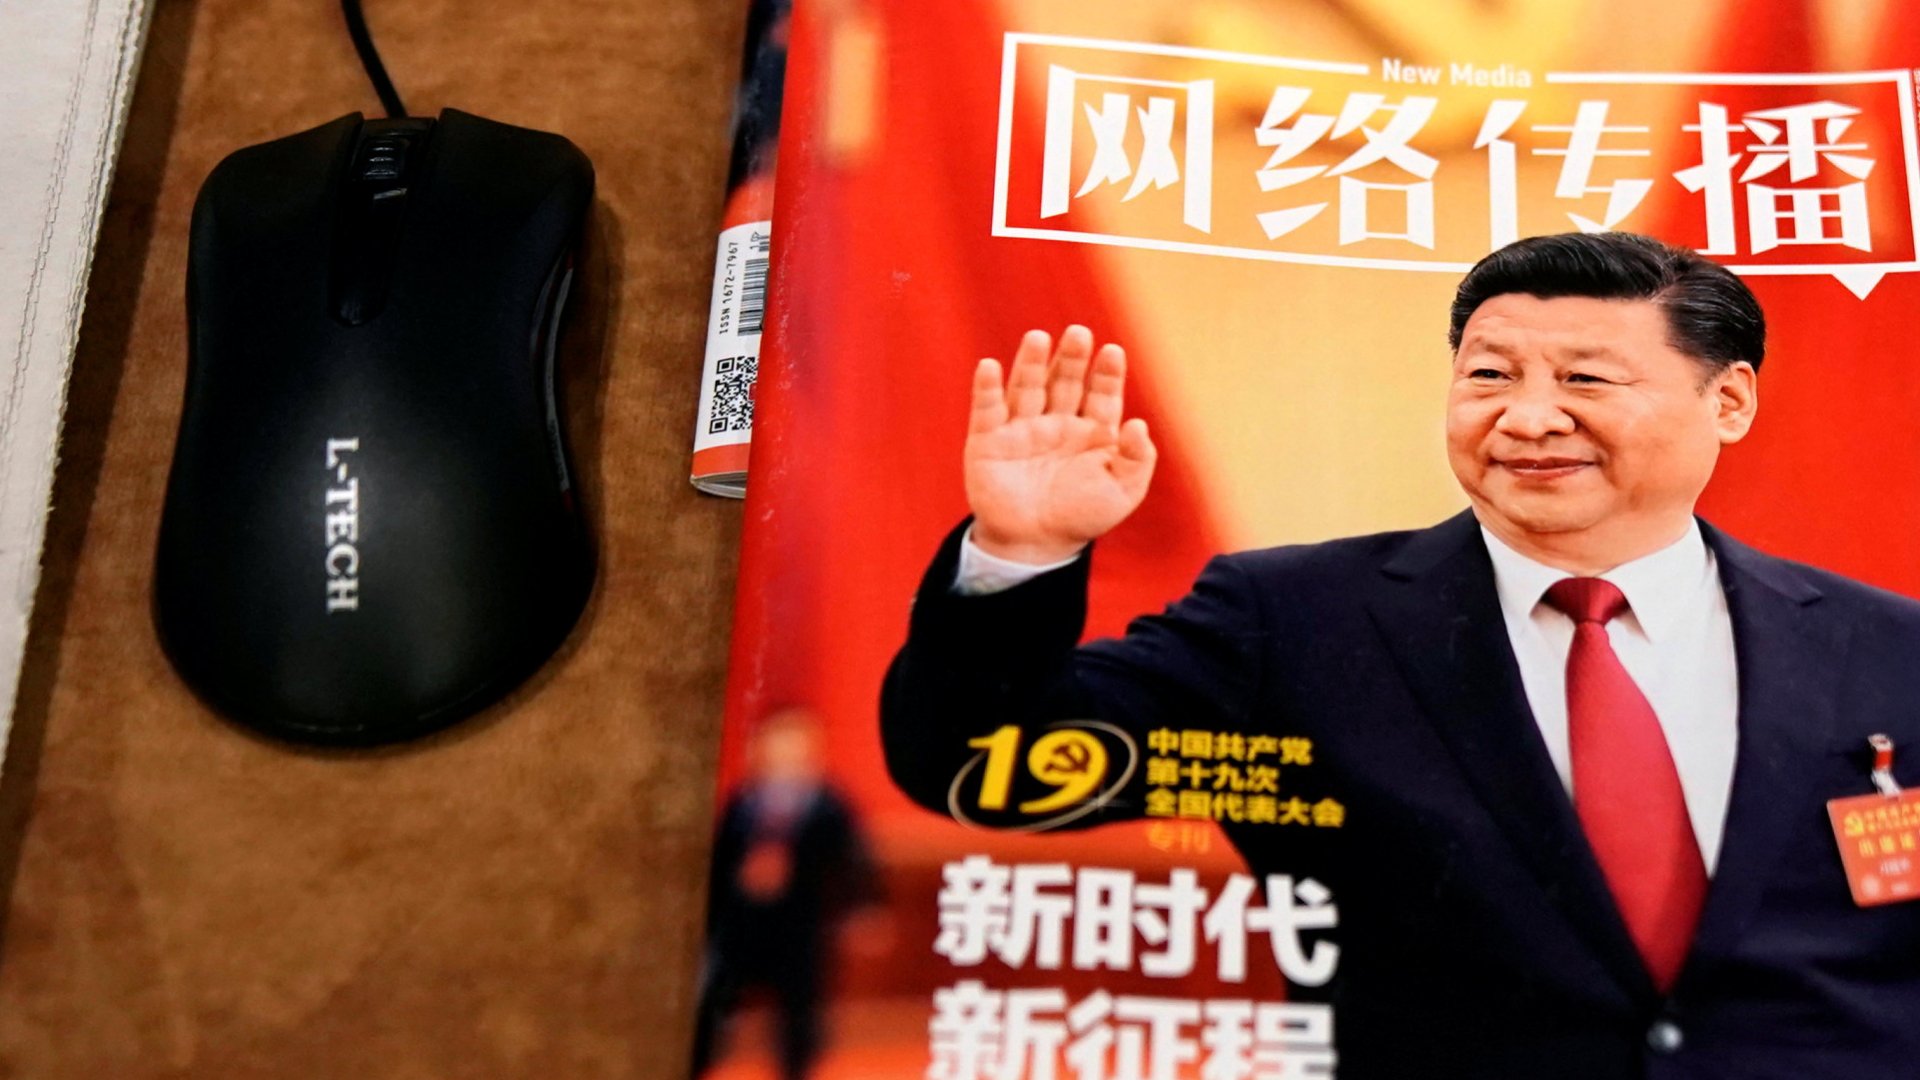 Zeitung mit Xi-Porträt neben einer Maus | REUTERS